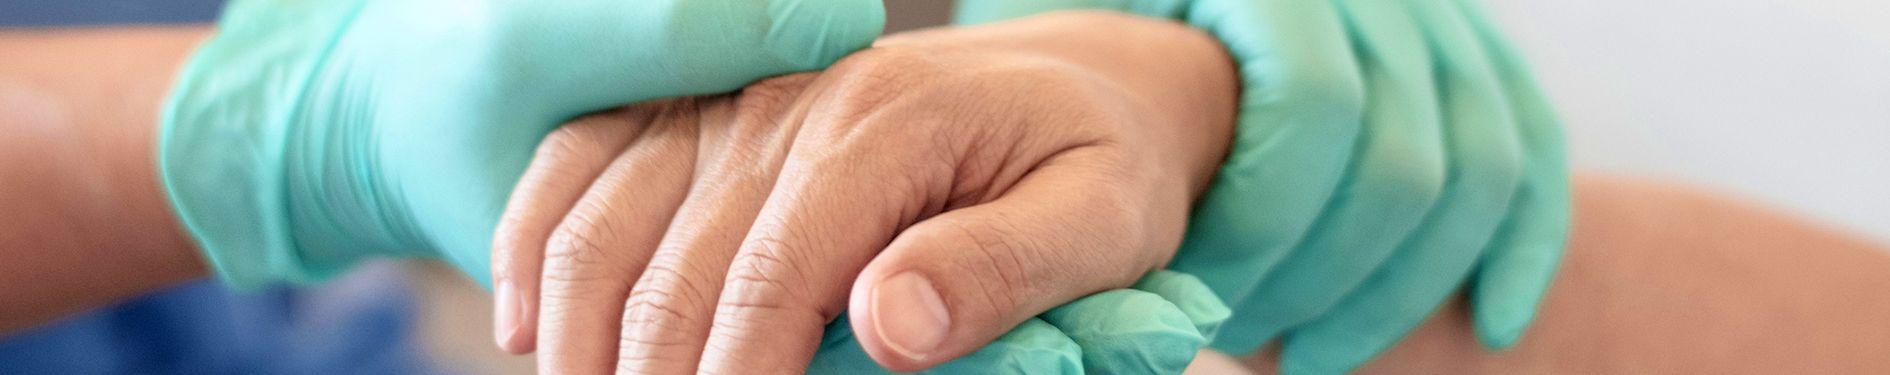 Sprawdzanie dłoni przez lekarza